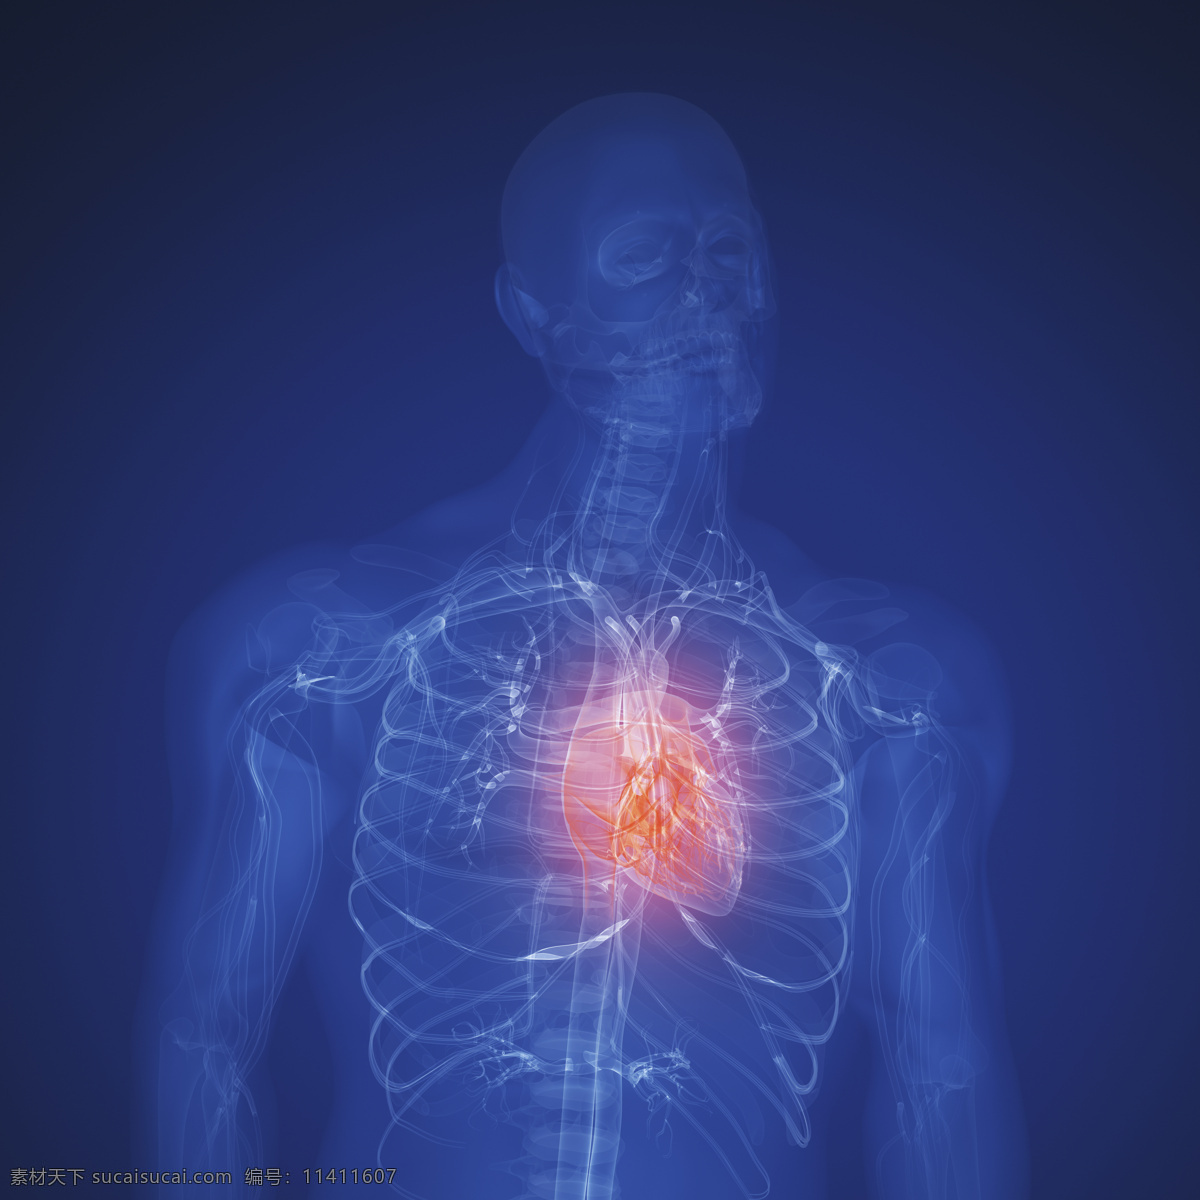 人体 肺部 x 光 透视图 x光 图像 医疗主题 医疗护理 现代科技